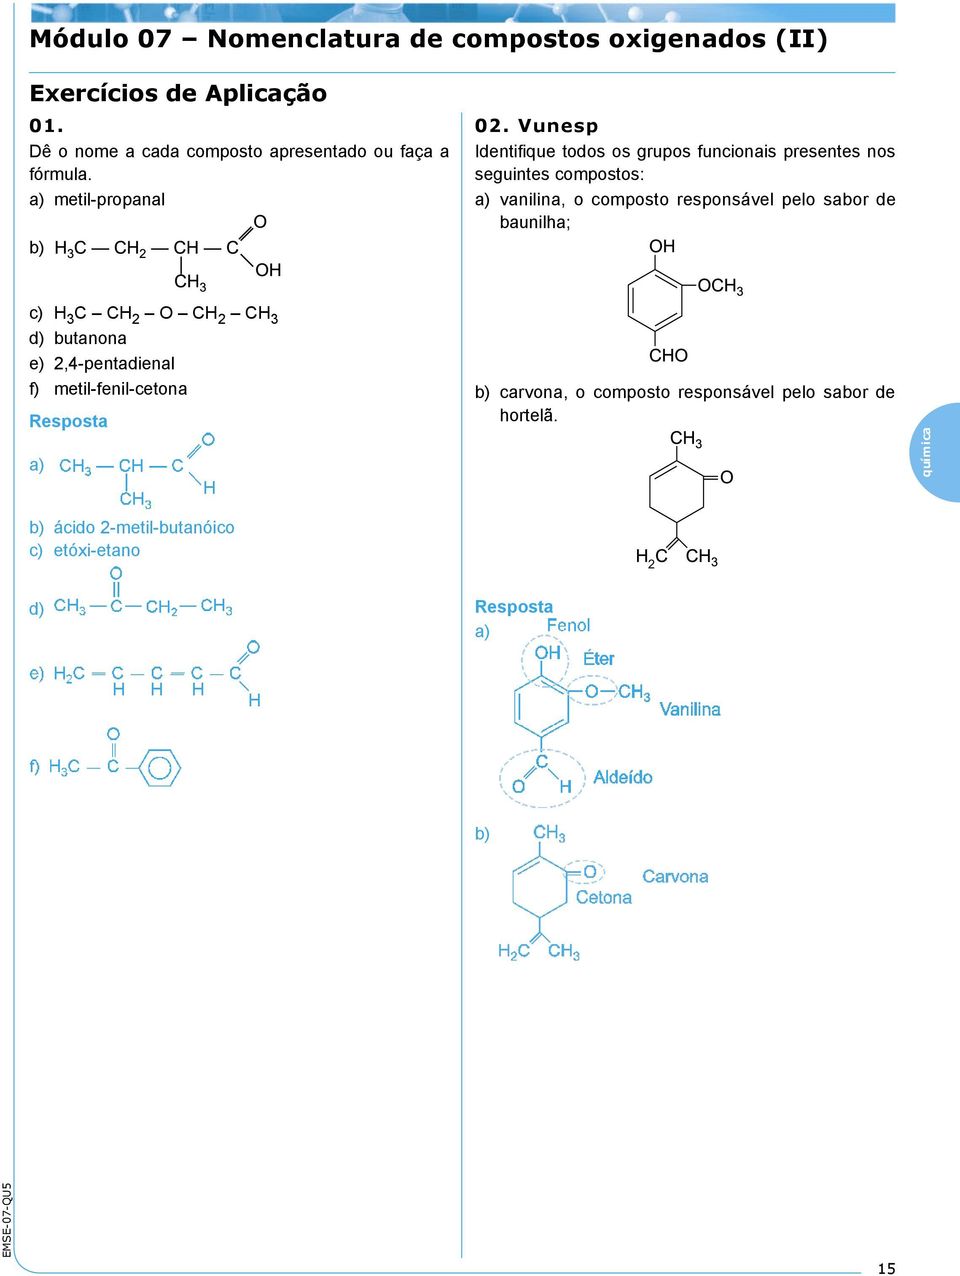 Vunesp Identifique todos os grupos funcionais presentes nos seguintes compostos: a) vanilina, o composto responsável pelo sabor de